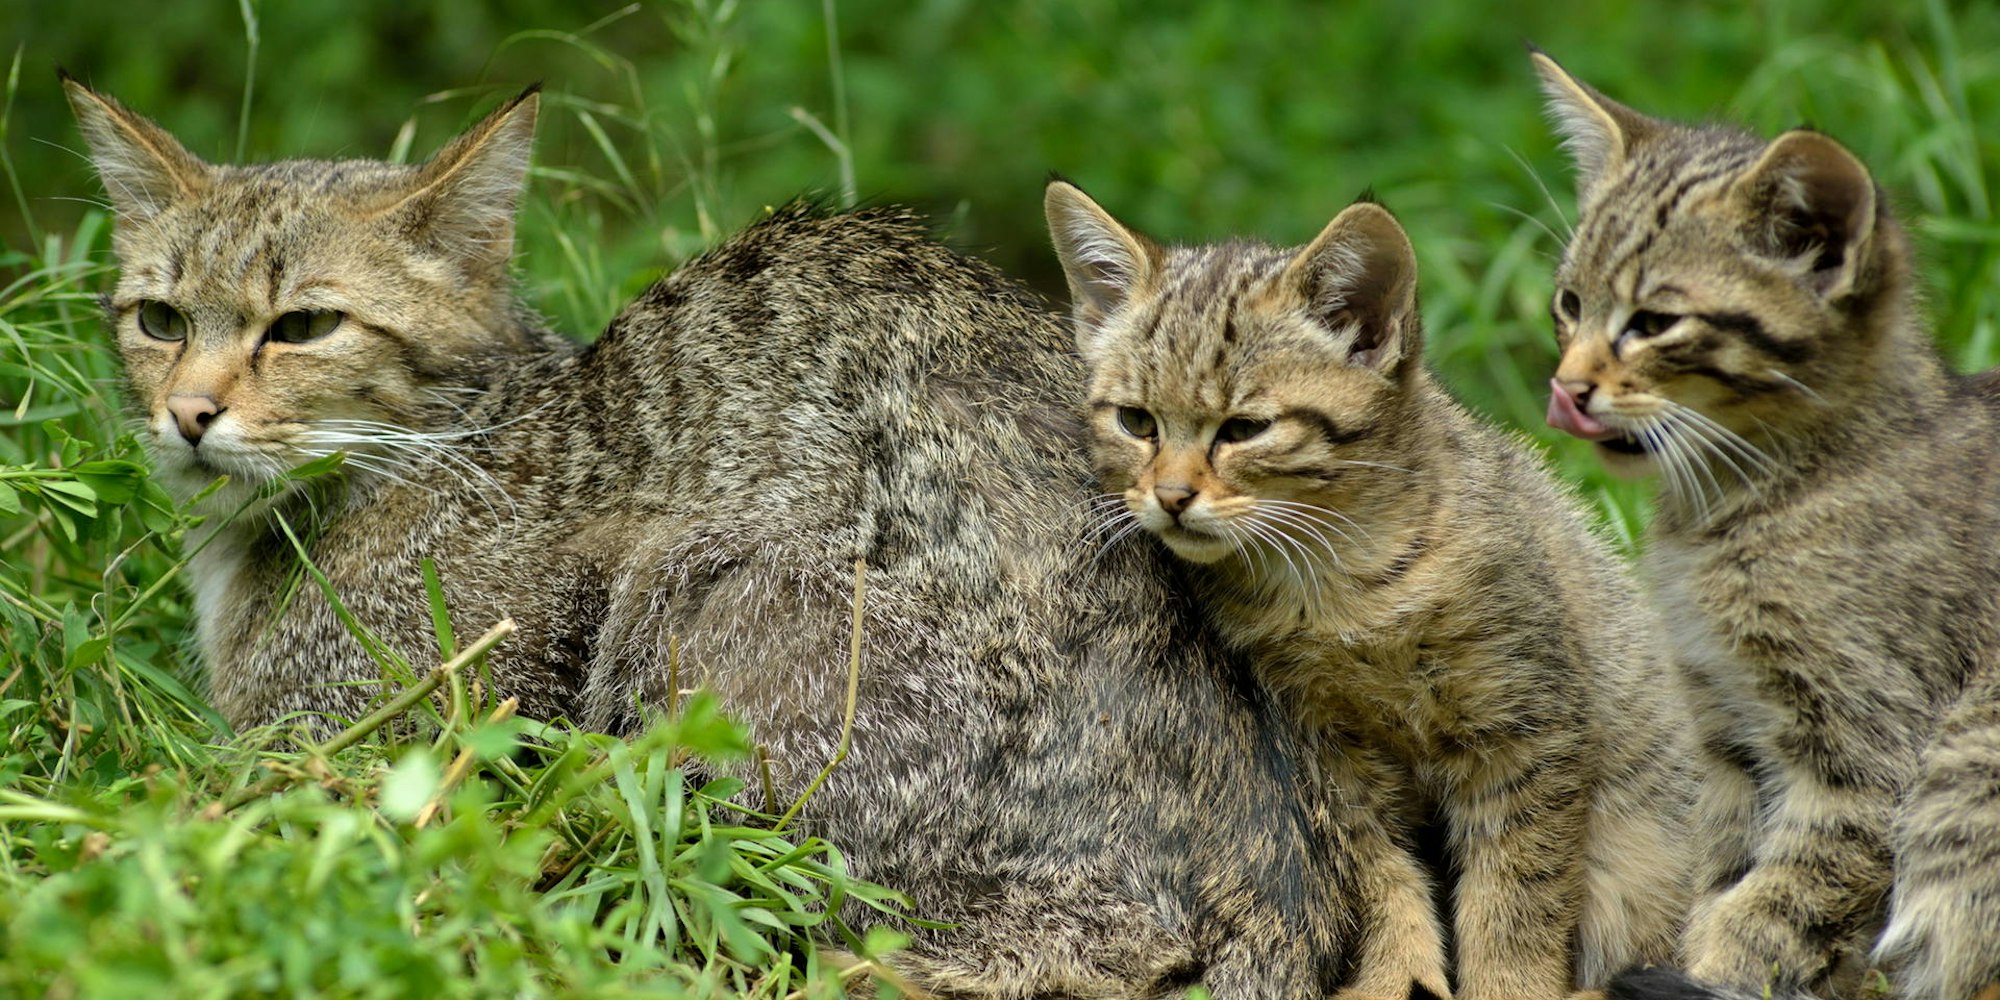 Unwiderstehlich süß sind die jungen Wildkatzen. Doch auch wenn man den Eindruck hat, sie seien vom Muttertier verlassen, darf man sie auf keinen Fall mitnehmen.